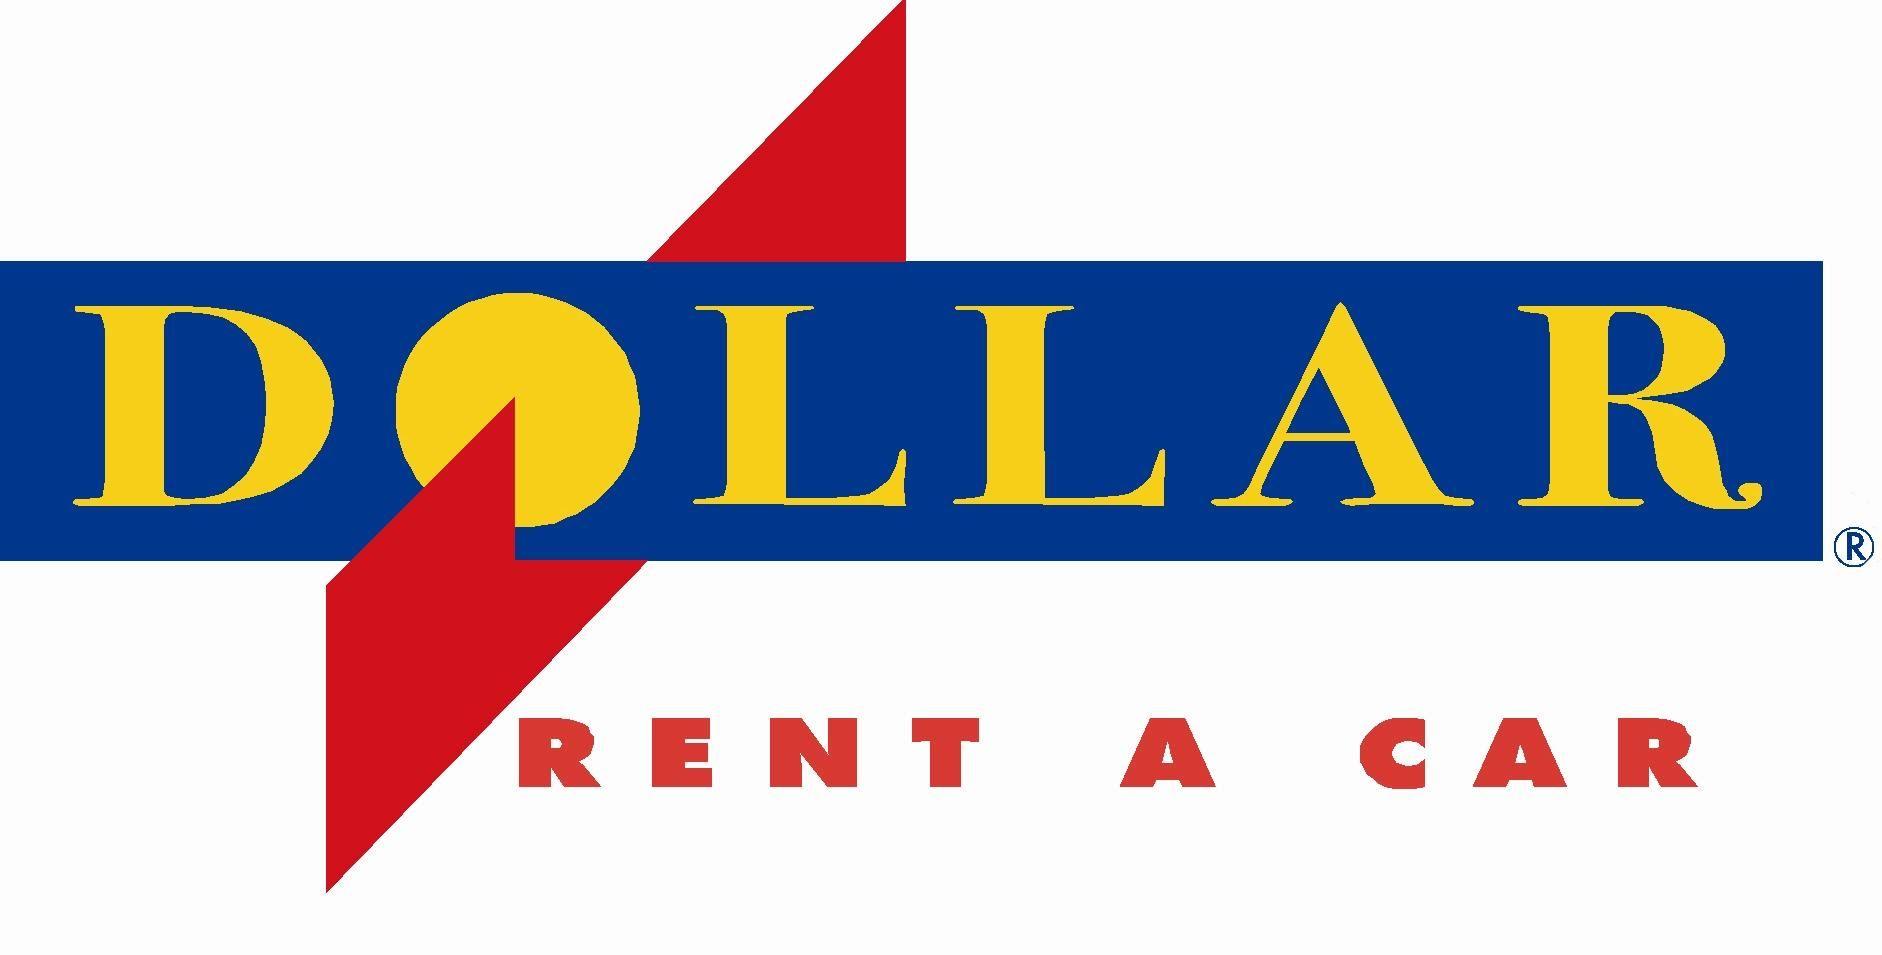 Dollar Rent a Car Logo - Dollar Car Rental | Logopedia | FANDOM powered by Wikia